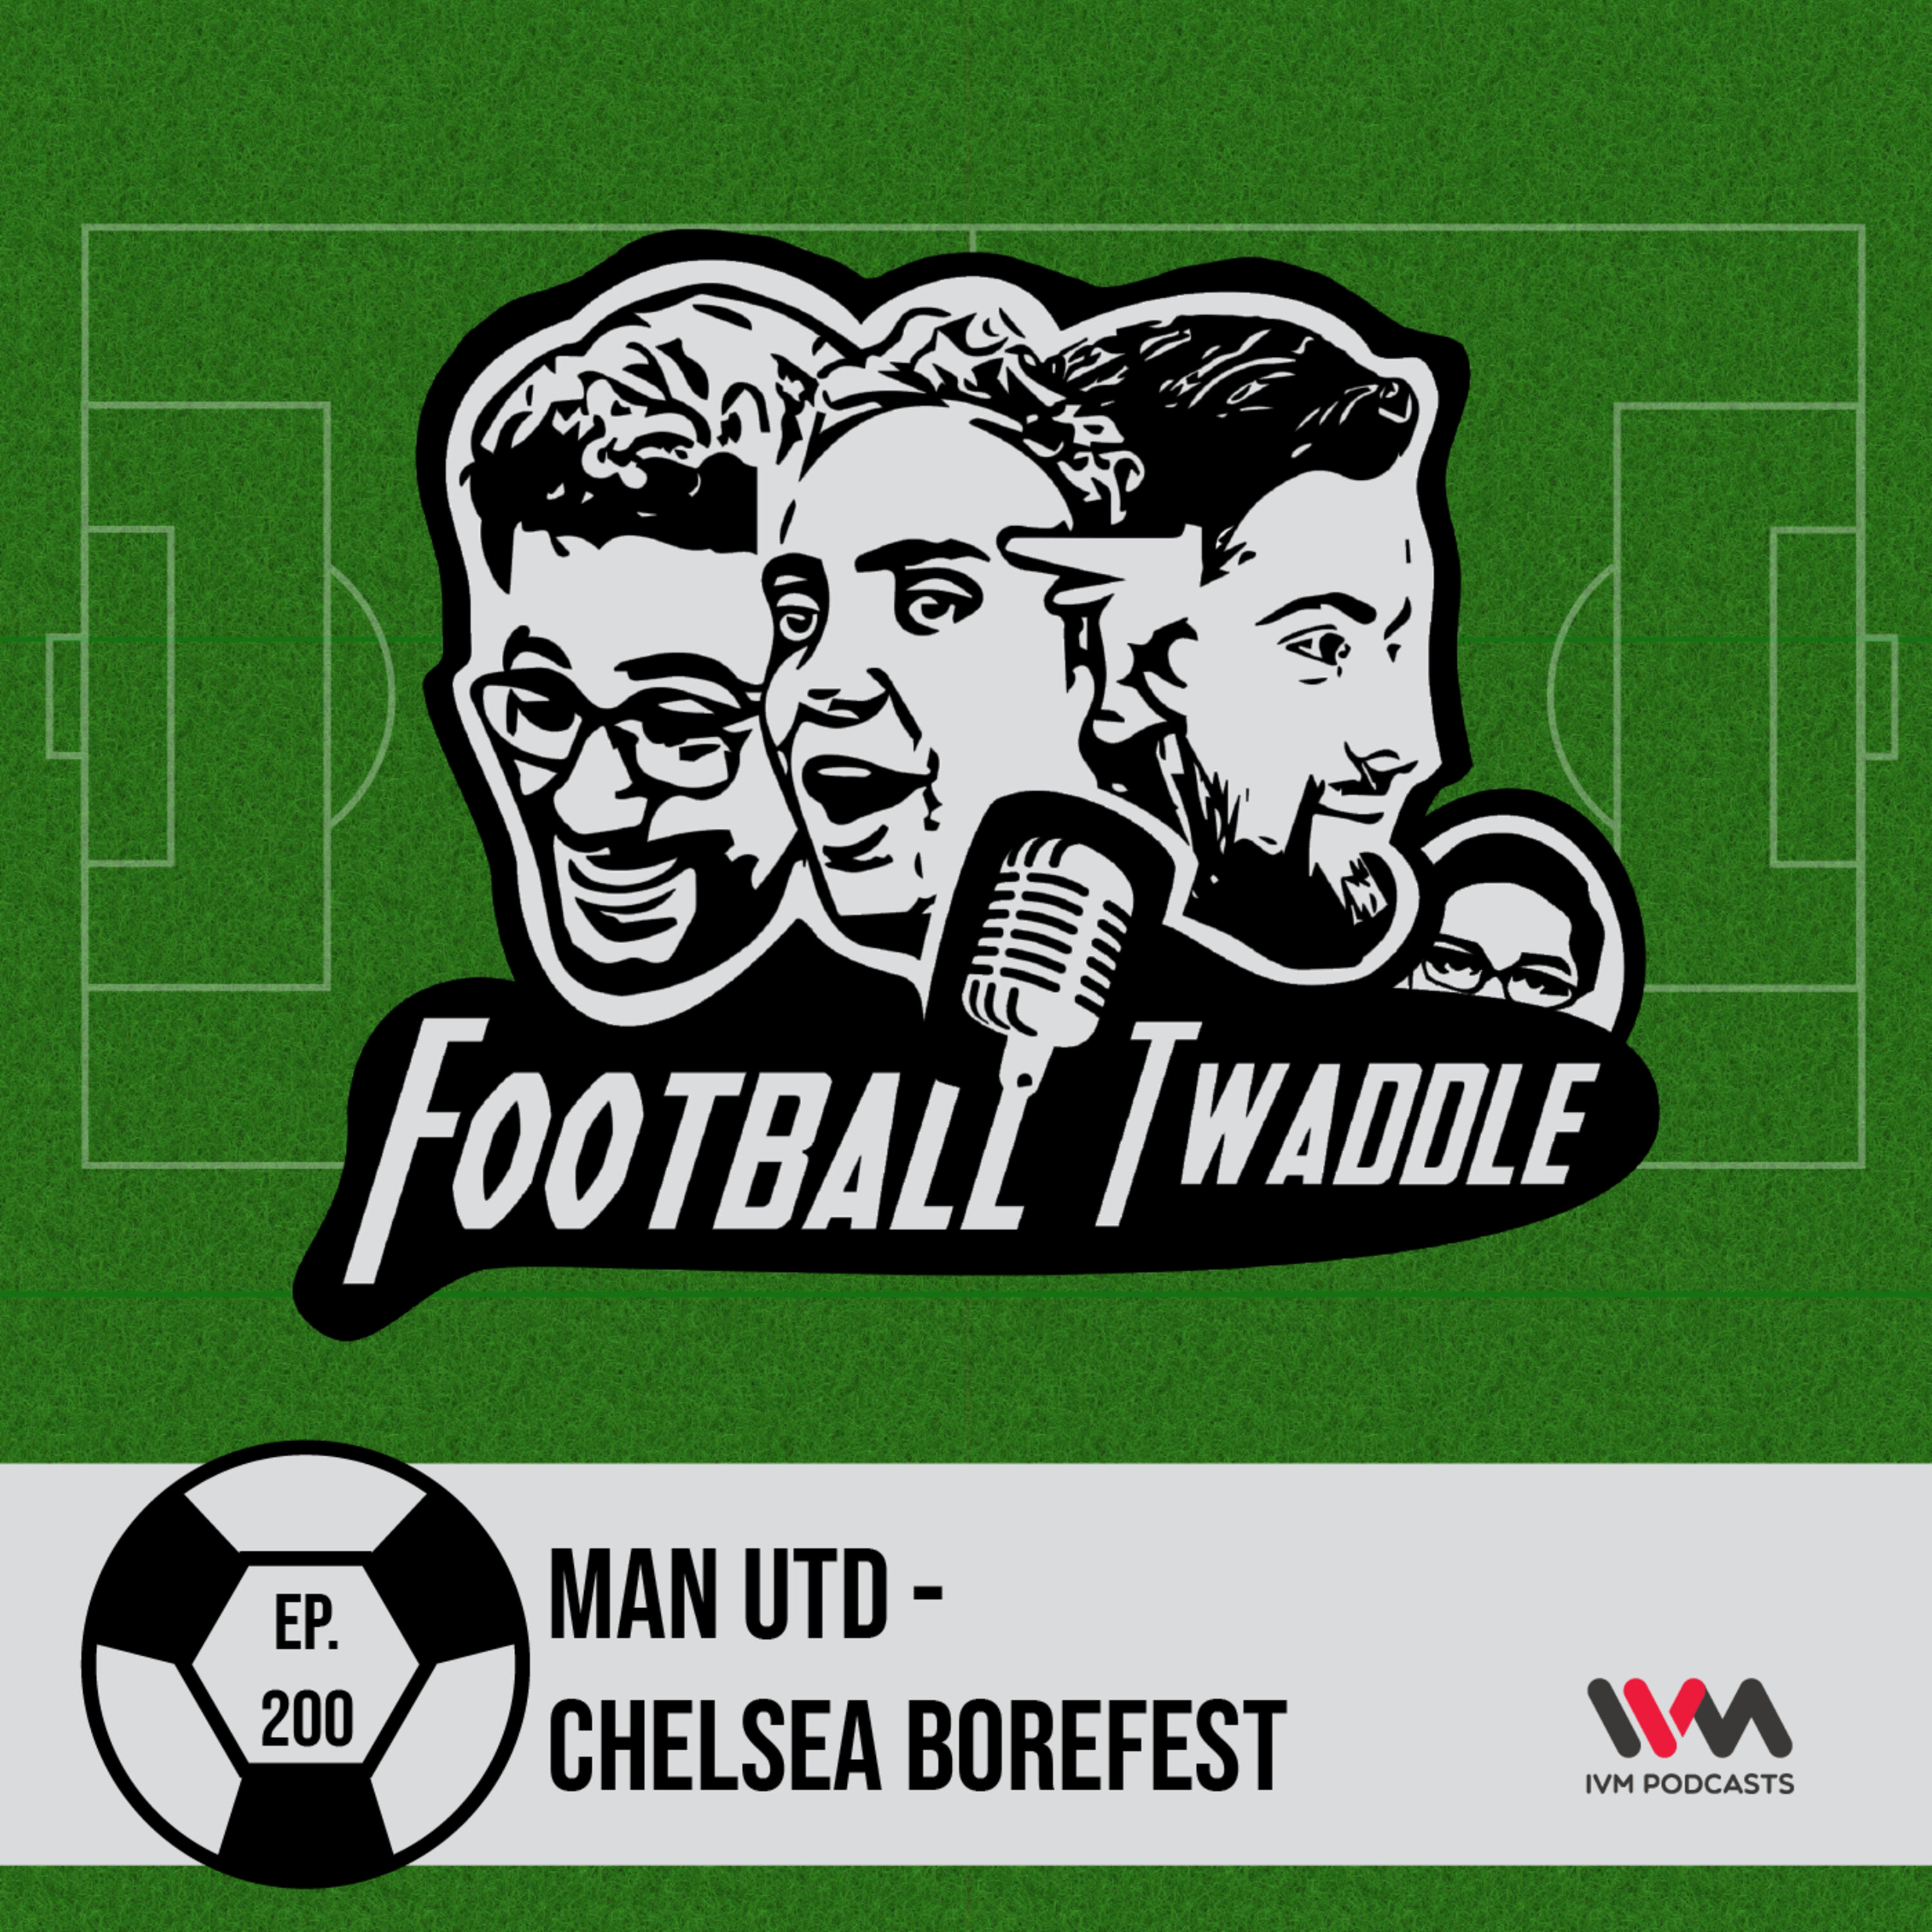 Man Utd - Chelsea borefest